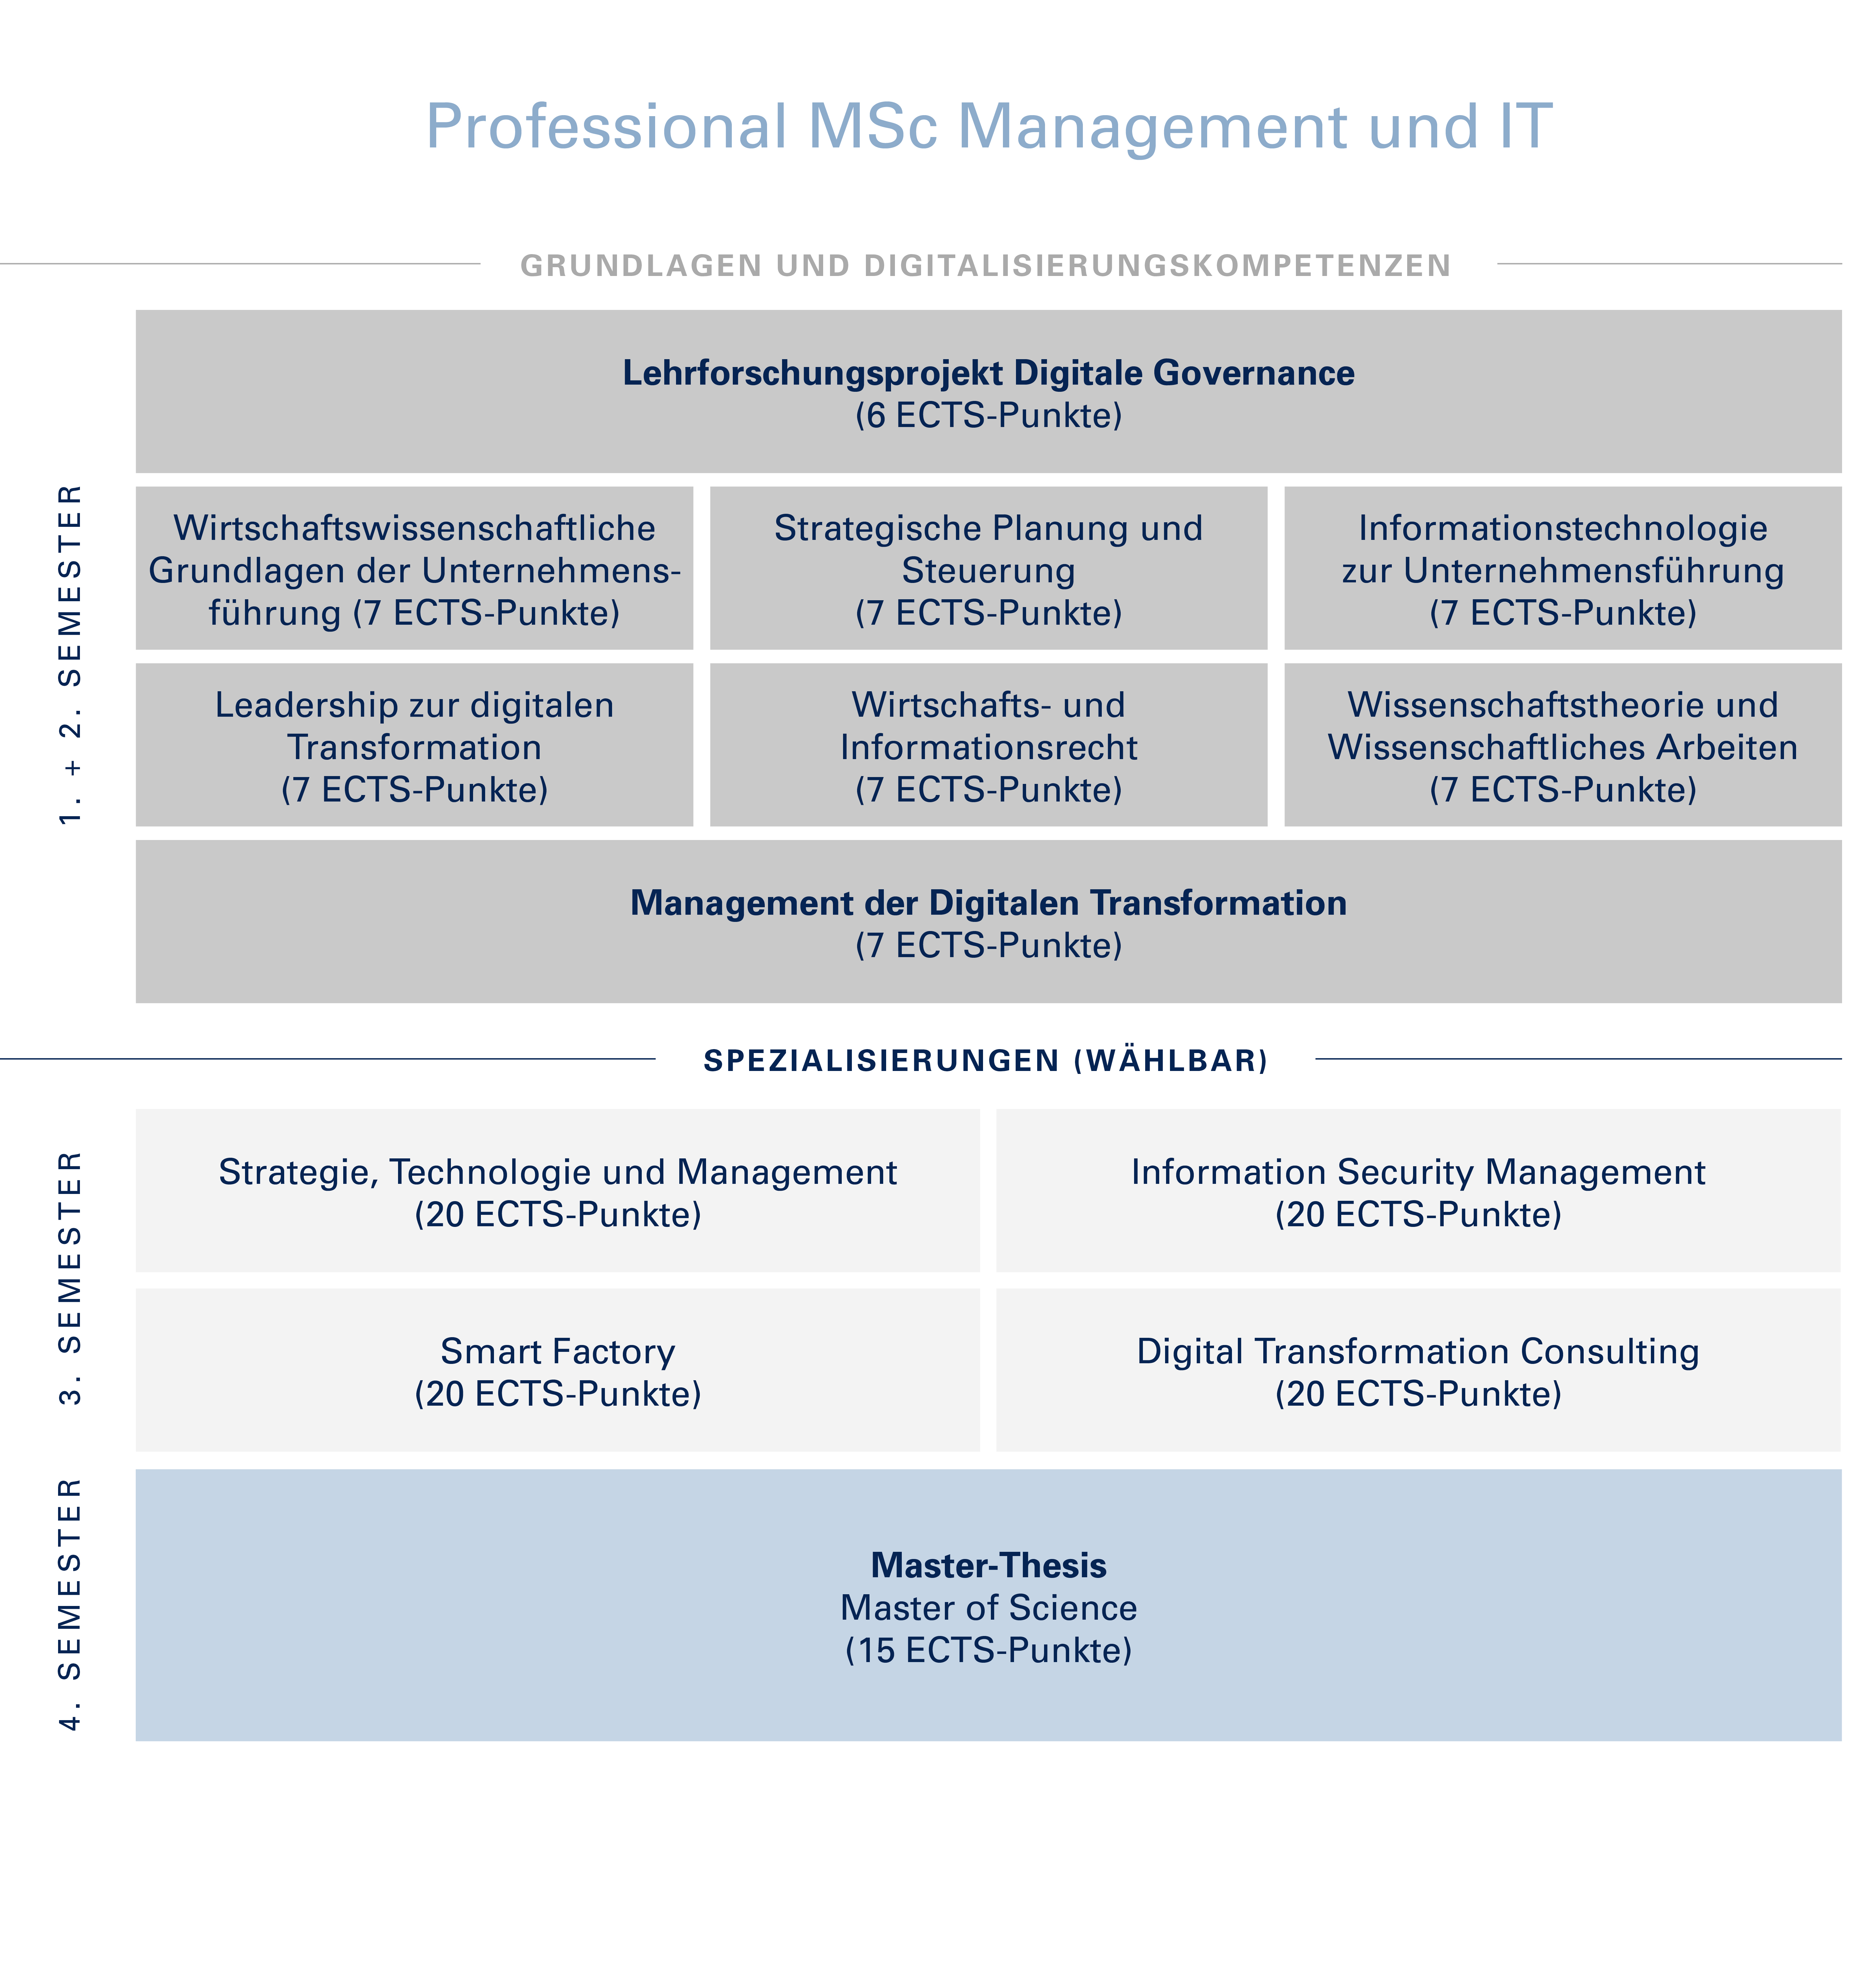 Aufbau Professional MSc Management und IT - dieser wird nachfolgend noch textlich beschrieben.